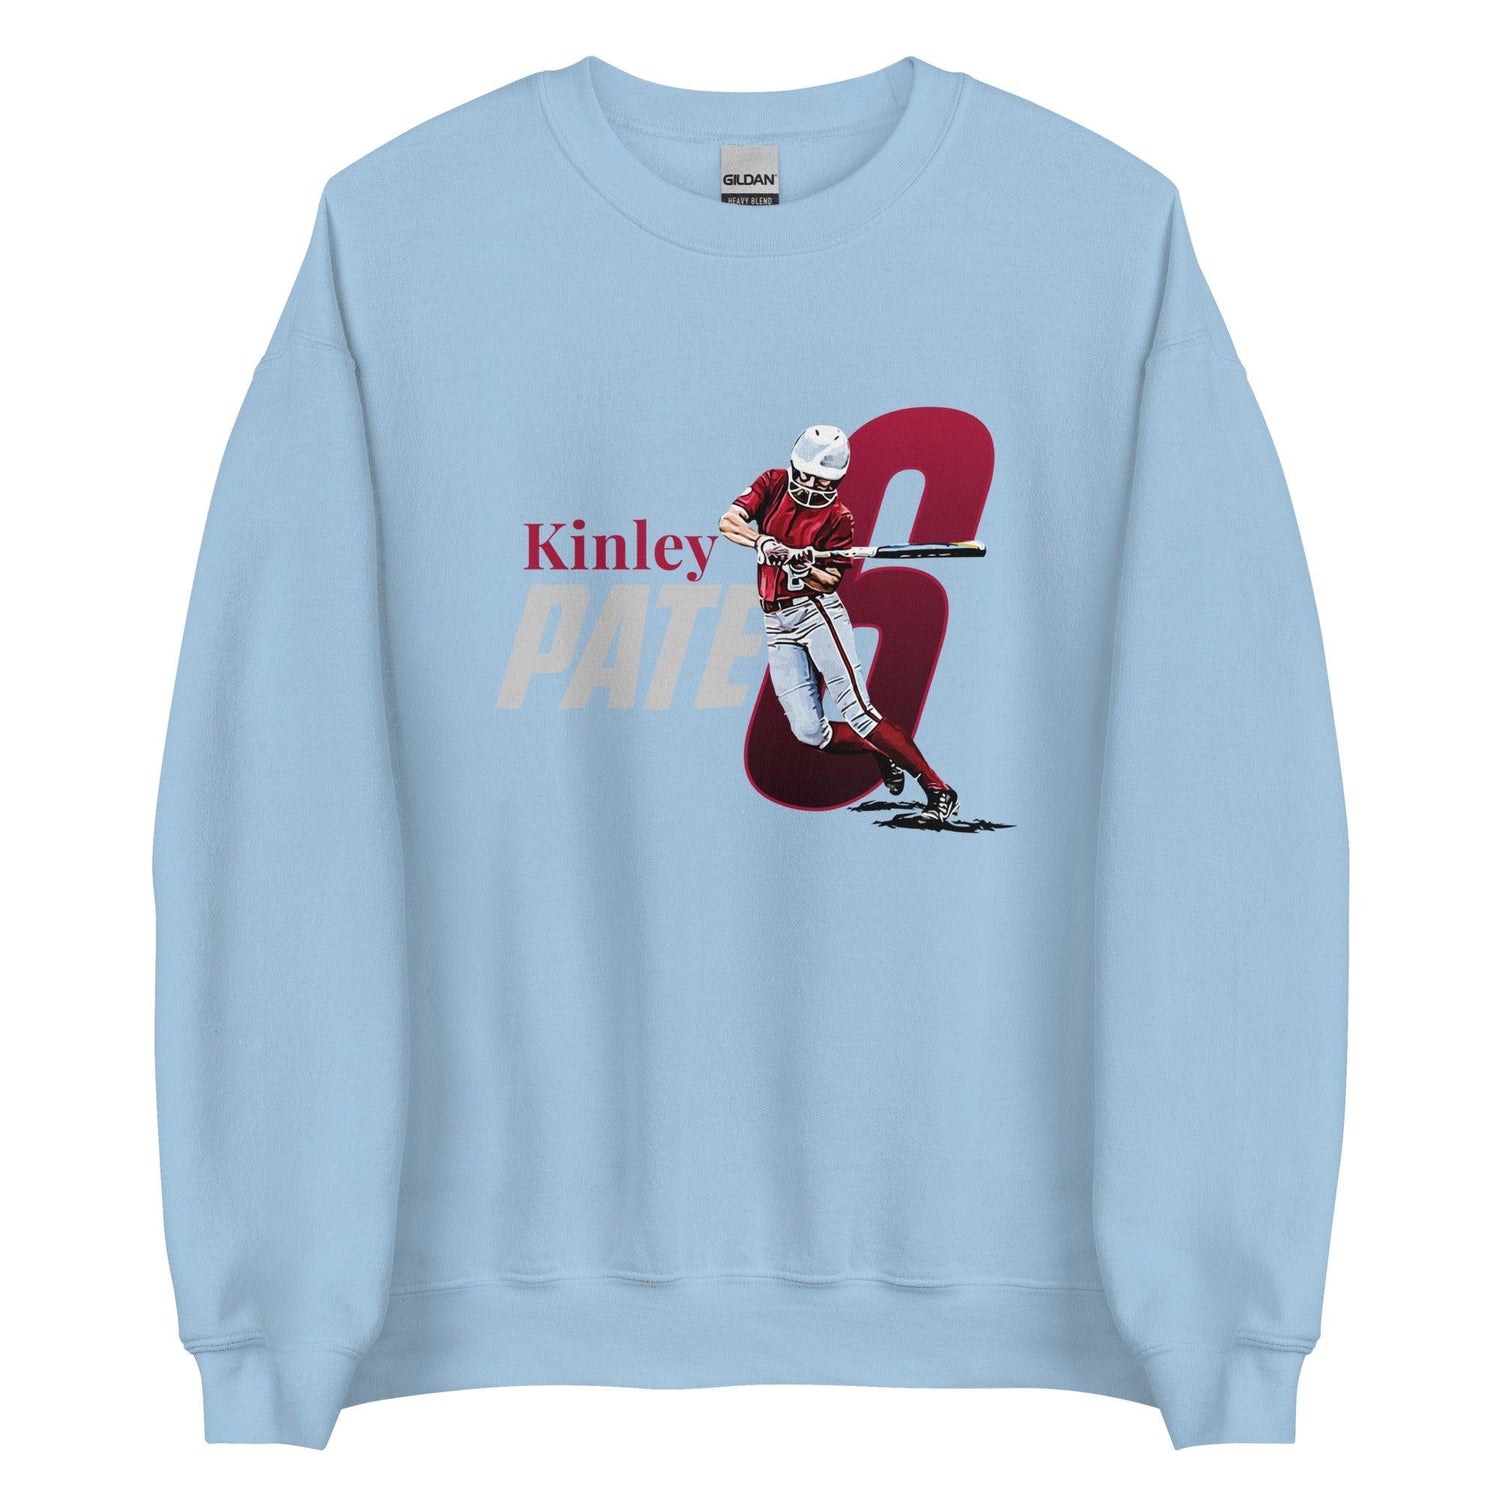 Kinley Pate "Gameday" Sweatshirt - Fan Arch